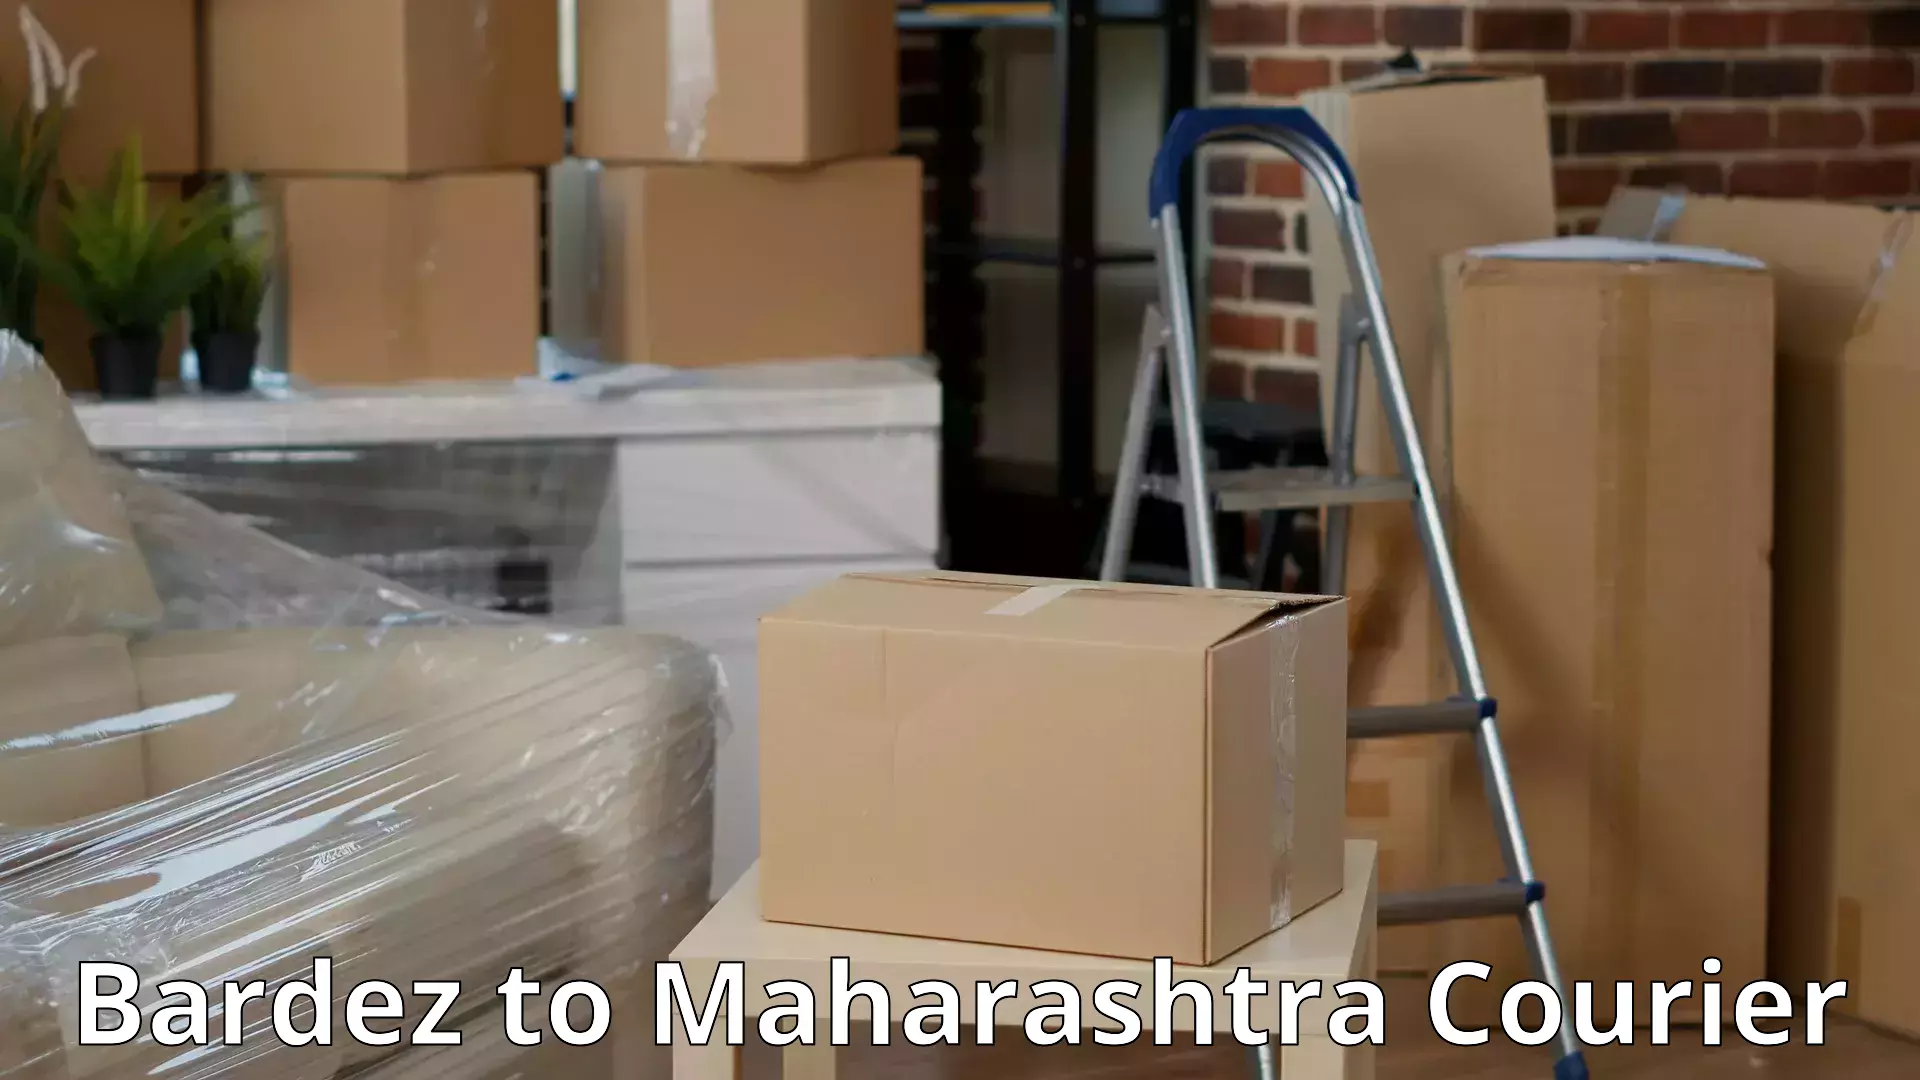 Professional moving company Bardez to Maharashtra